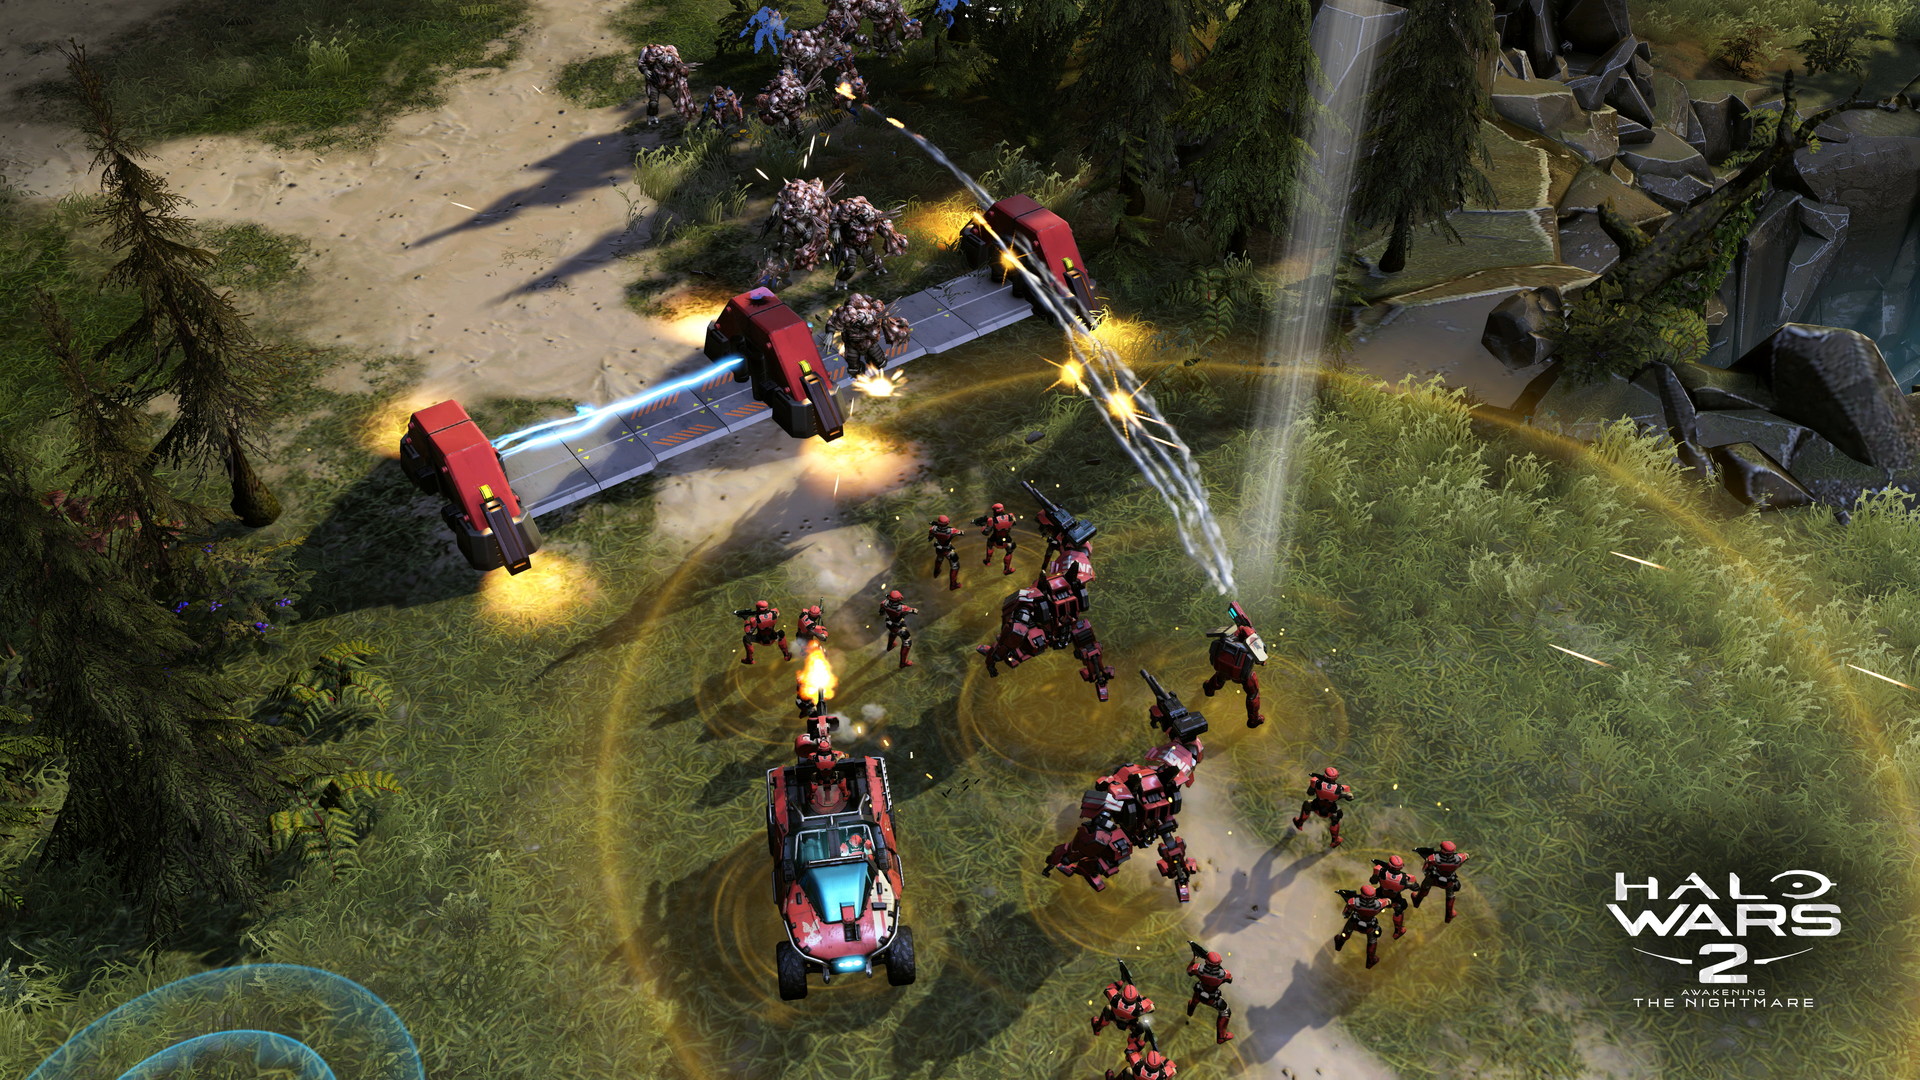 Halo Wars 2: Awakening the Nightmare - screenshot 2